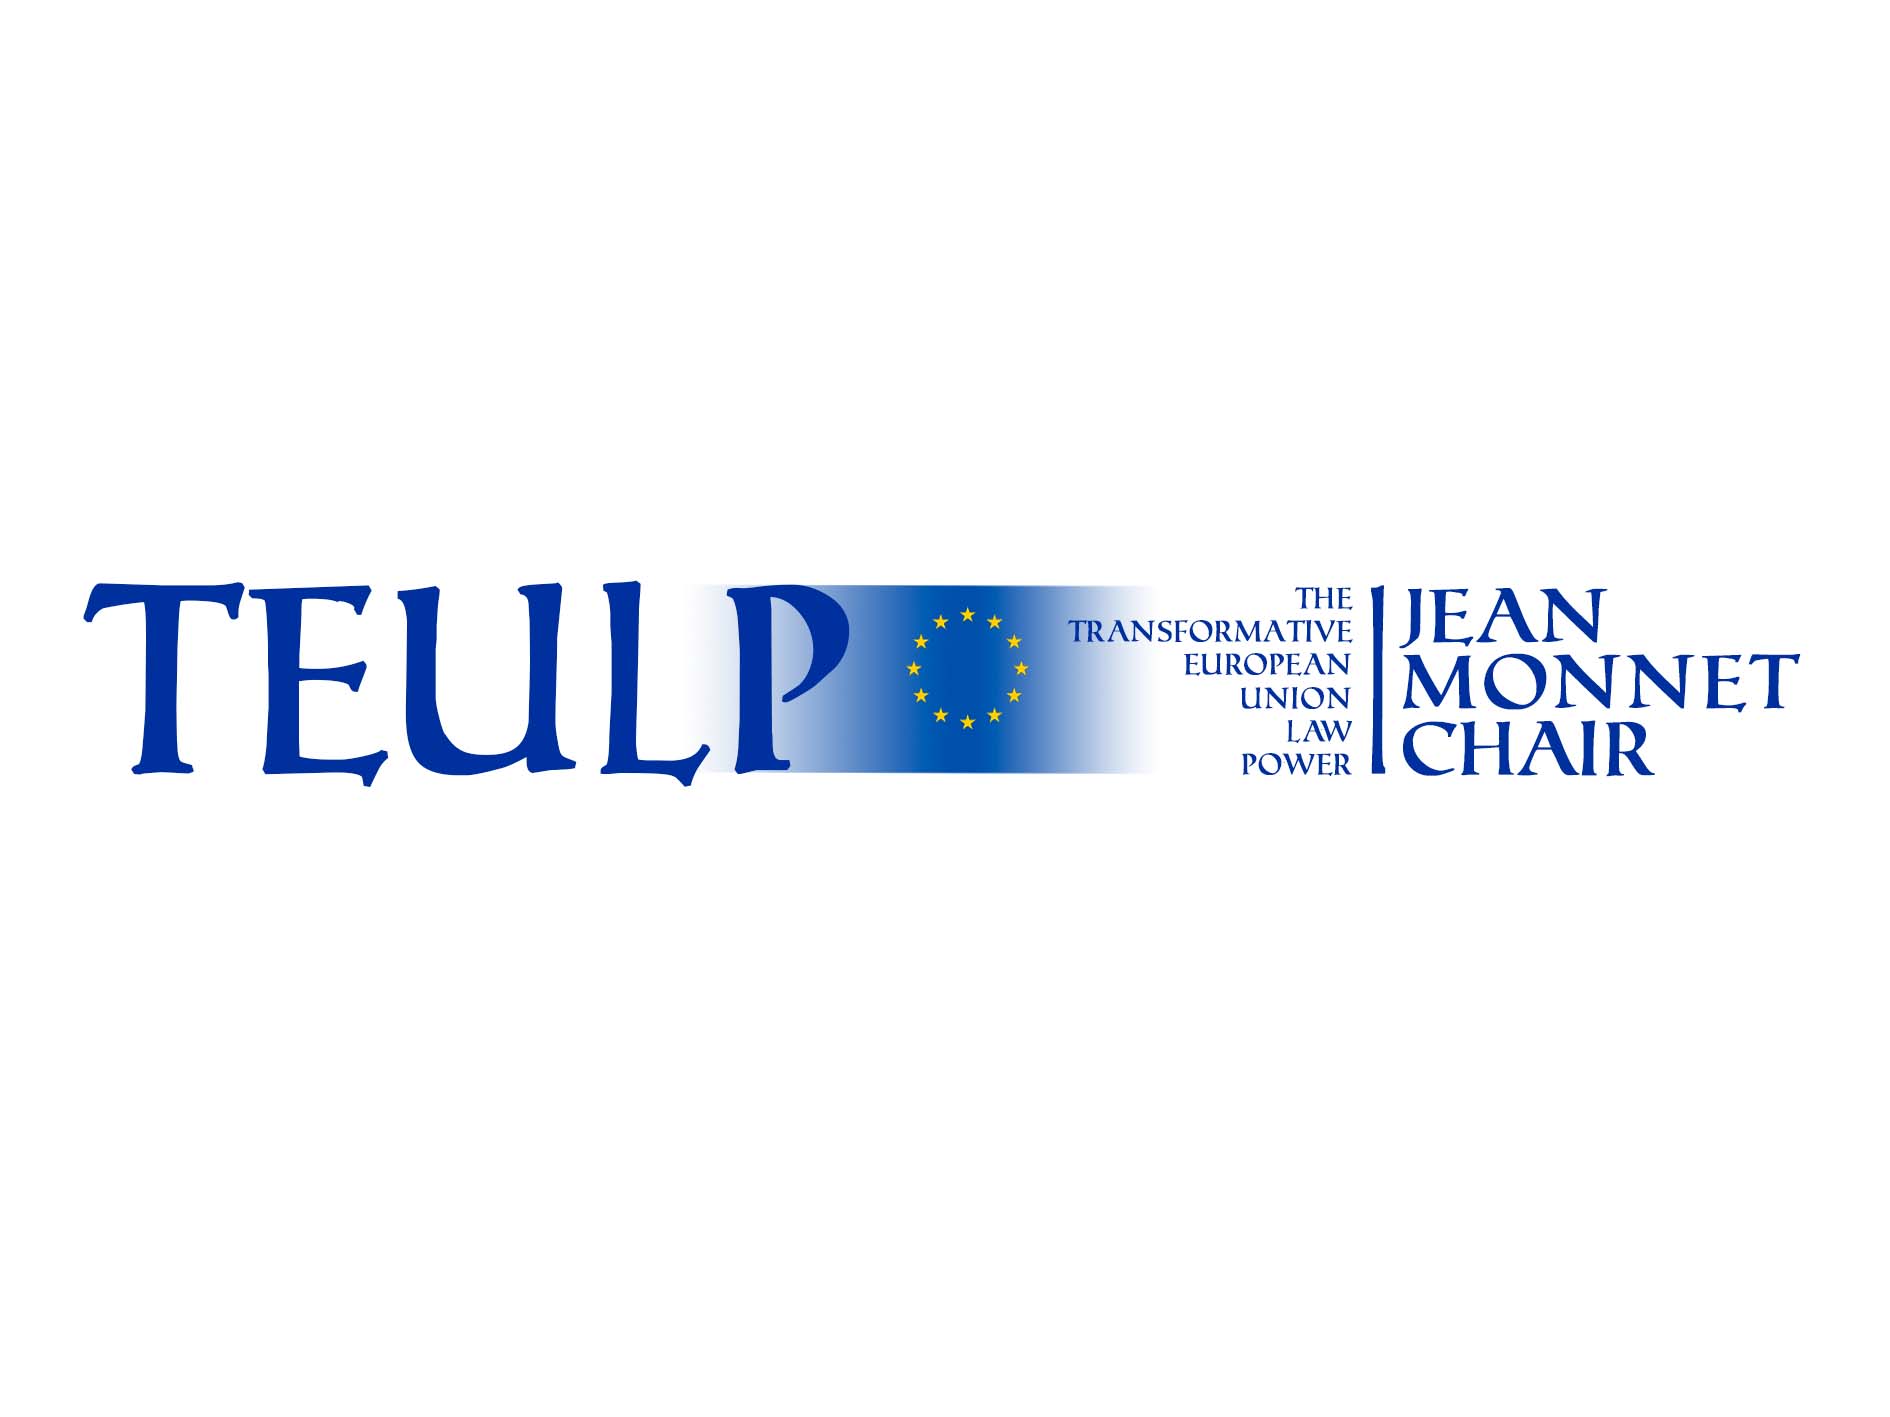 La Comisión Europea concede una Cátedra Jean Monnet a profesor de la Universidad de Murcia